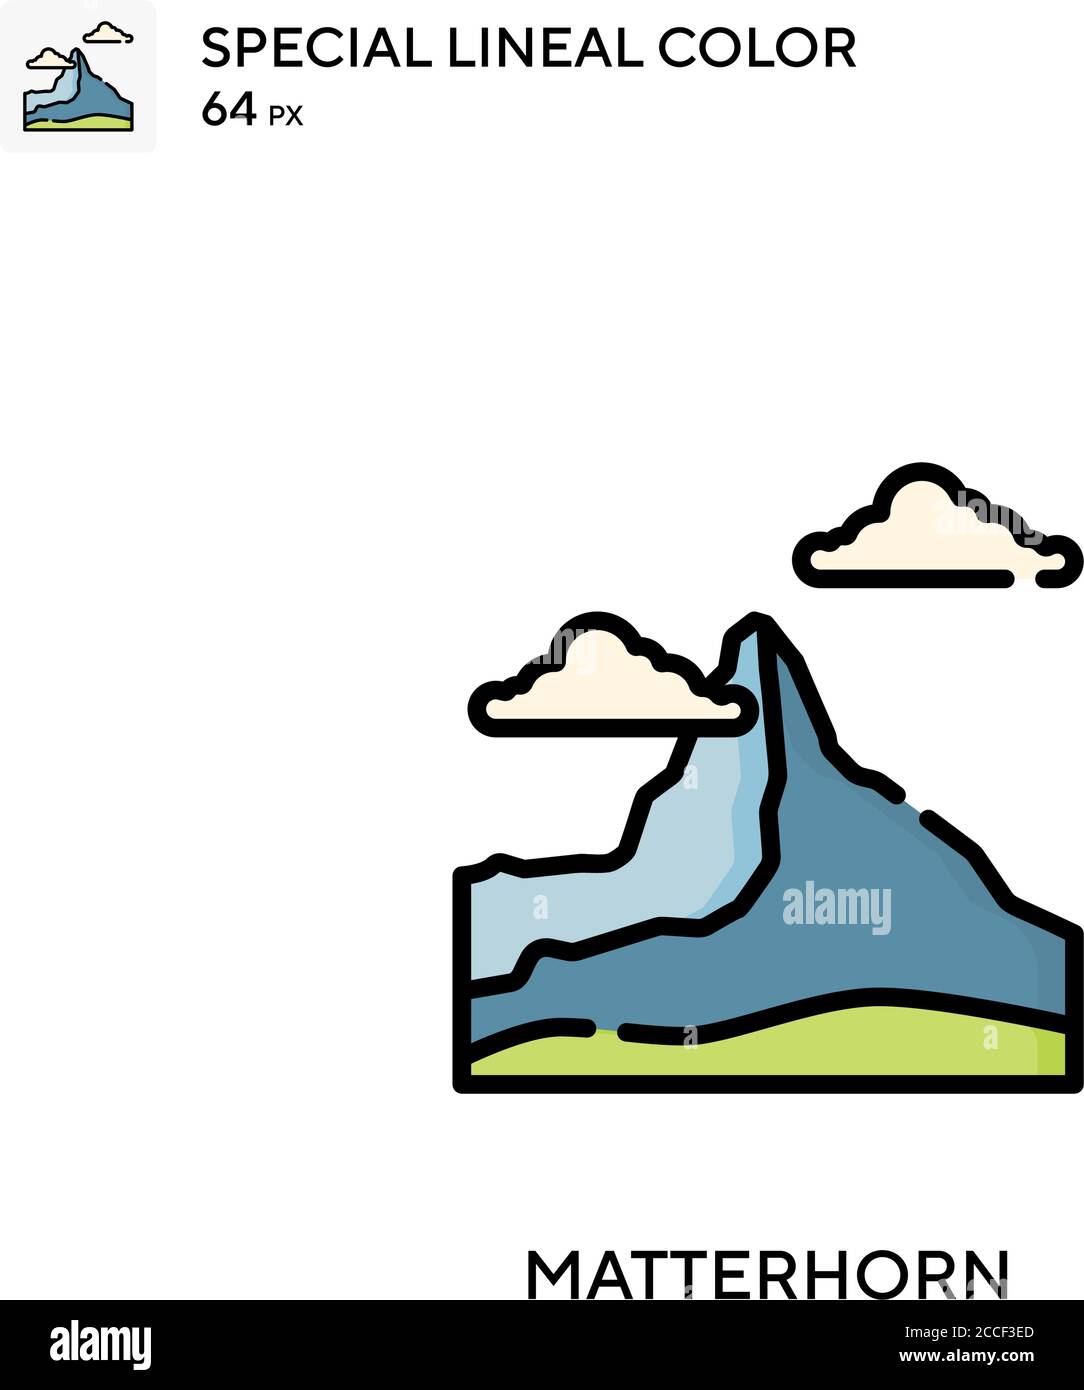 Matterhorn Special Linienfarbe Icon. Illustration Symbol Design Vorlage für Web mobile UI-Element. Stock Vektor